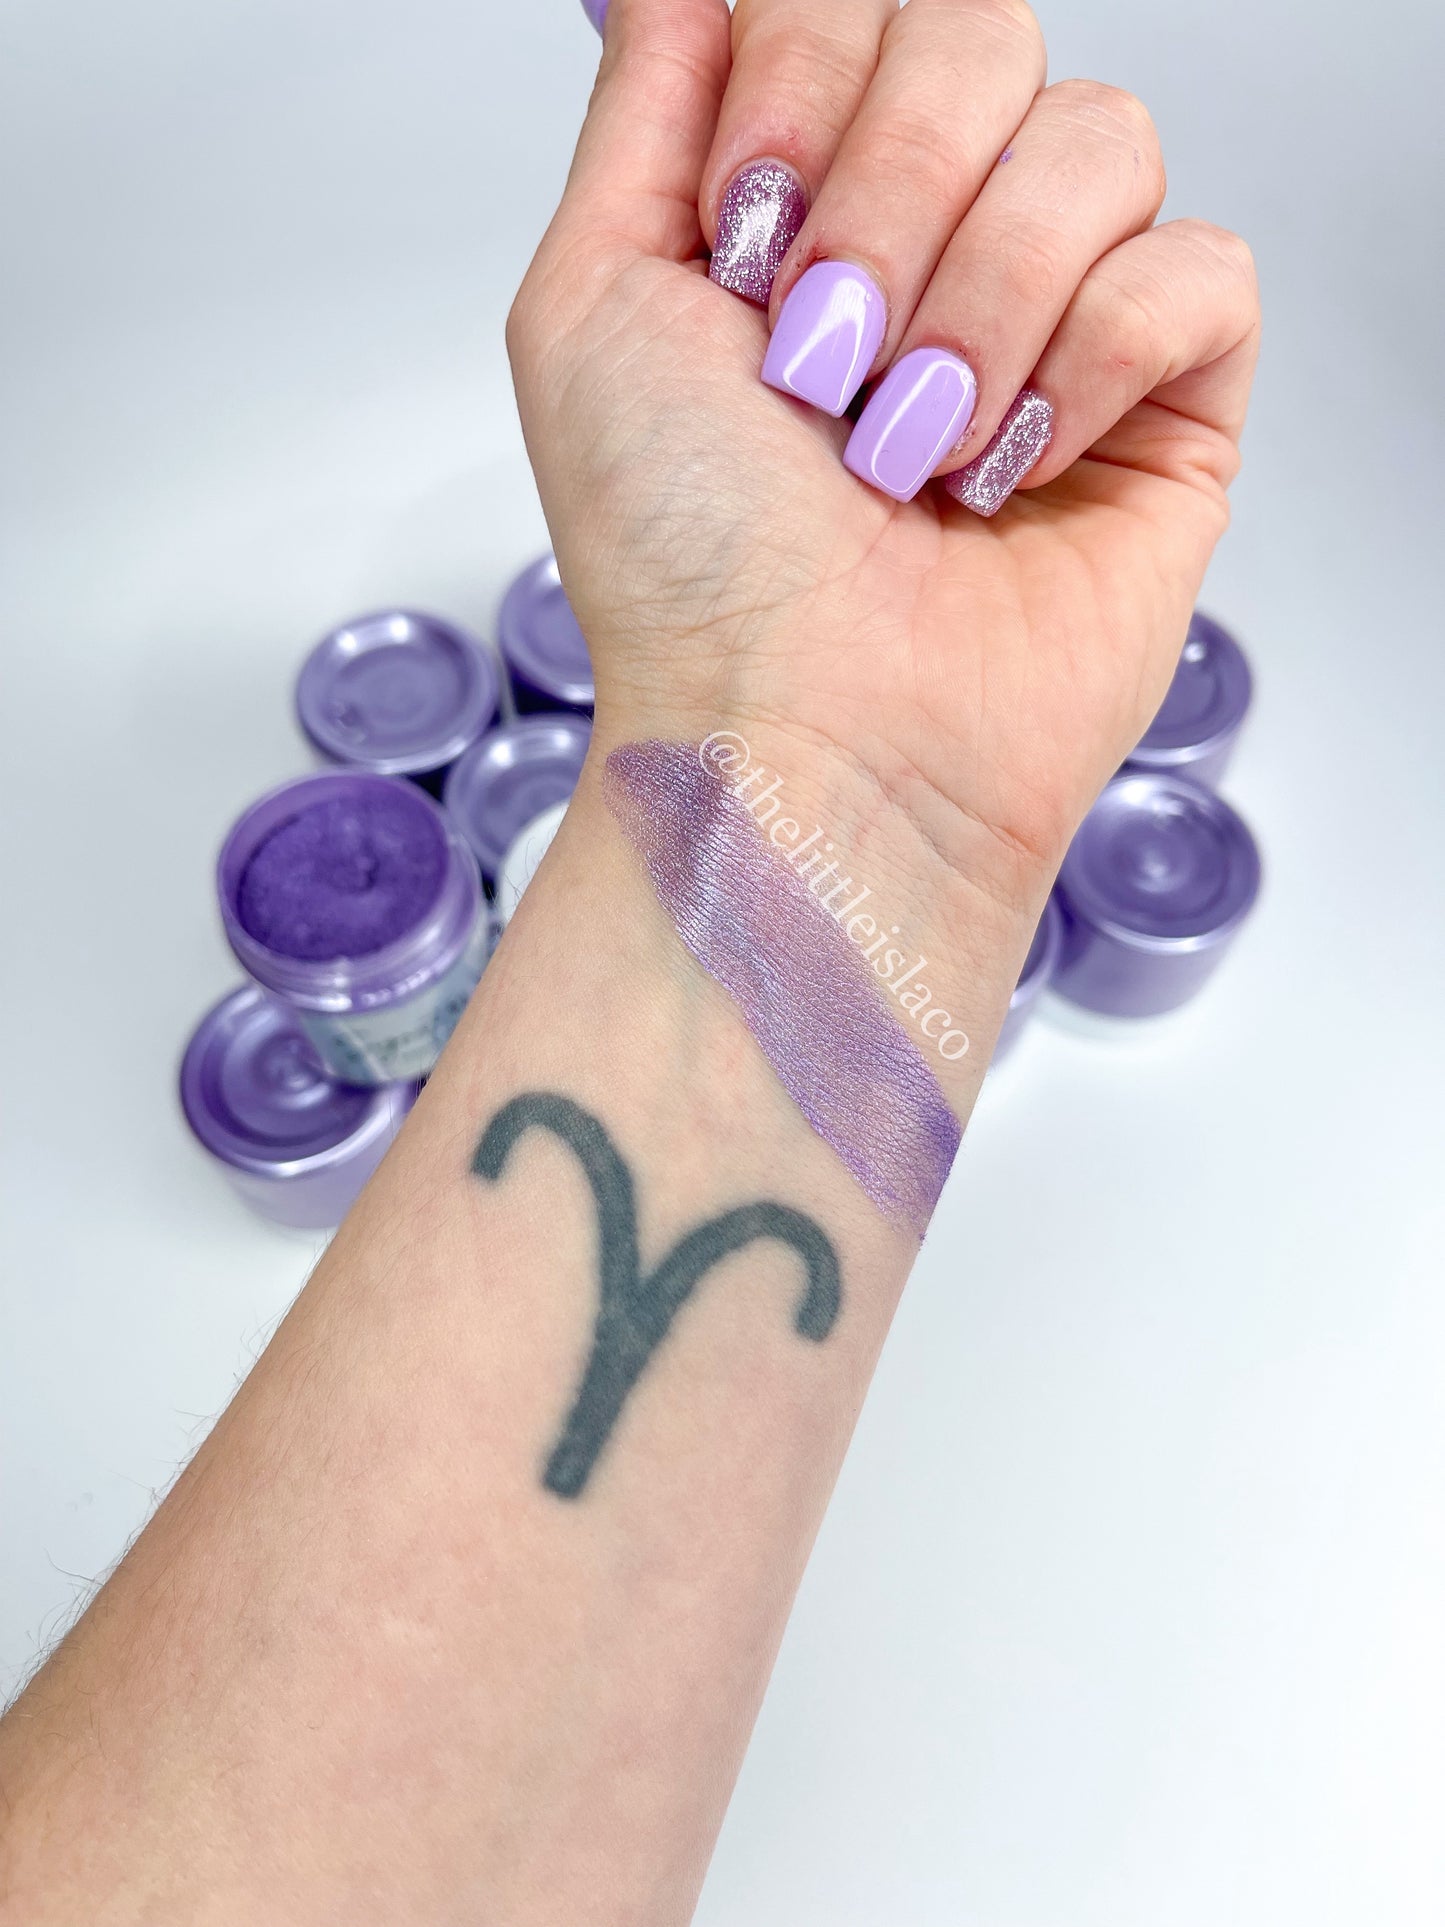 Mica Pigment Powder - Signature Lilac - 1oz/28g